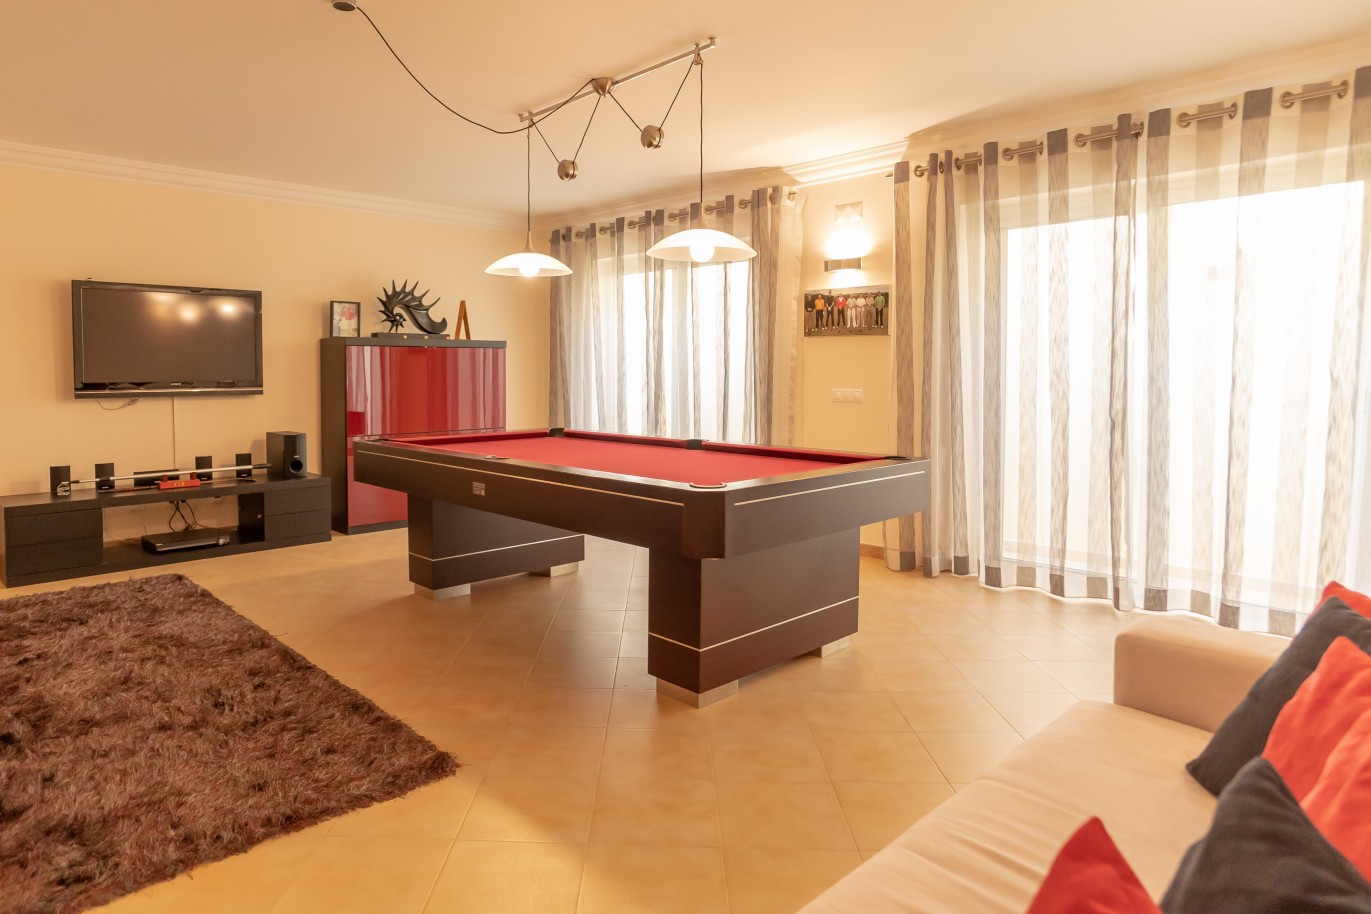 4 Bedroom Villa with pool for sale in Vila Real de Santo Antonio, Algarve_215699